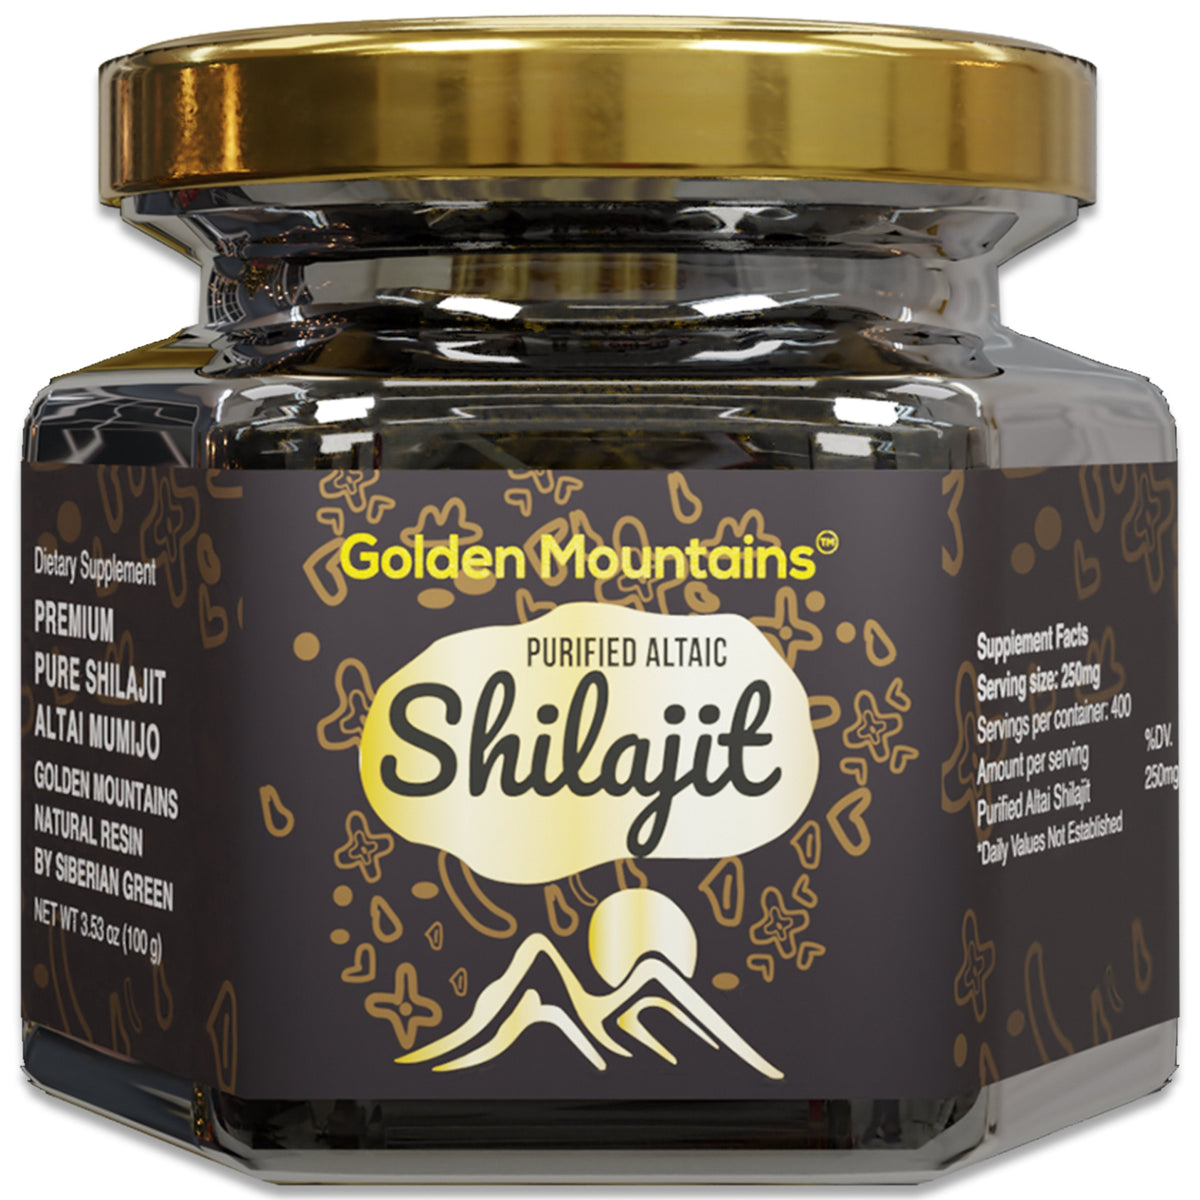 Golden Mountains Shilajit Resina Premium Pura Autentica Siberiana Altai 100g - Cucchiaio dosatore - Esclusivo Certificato di Qualità